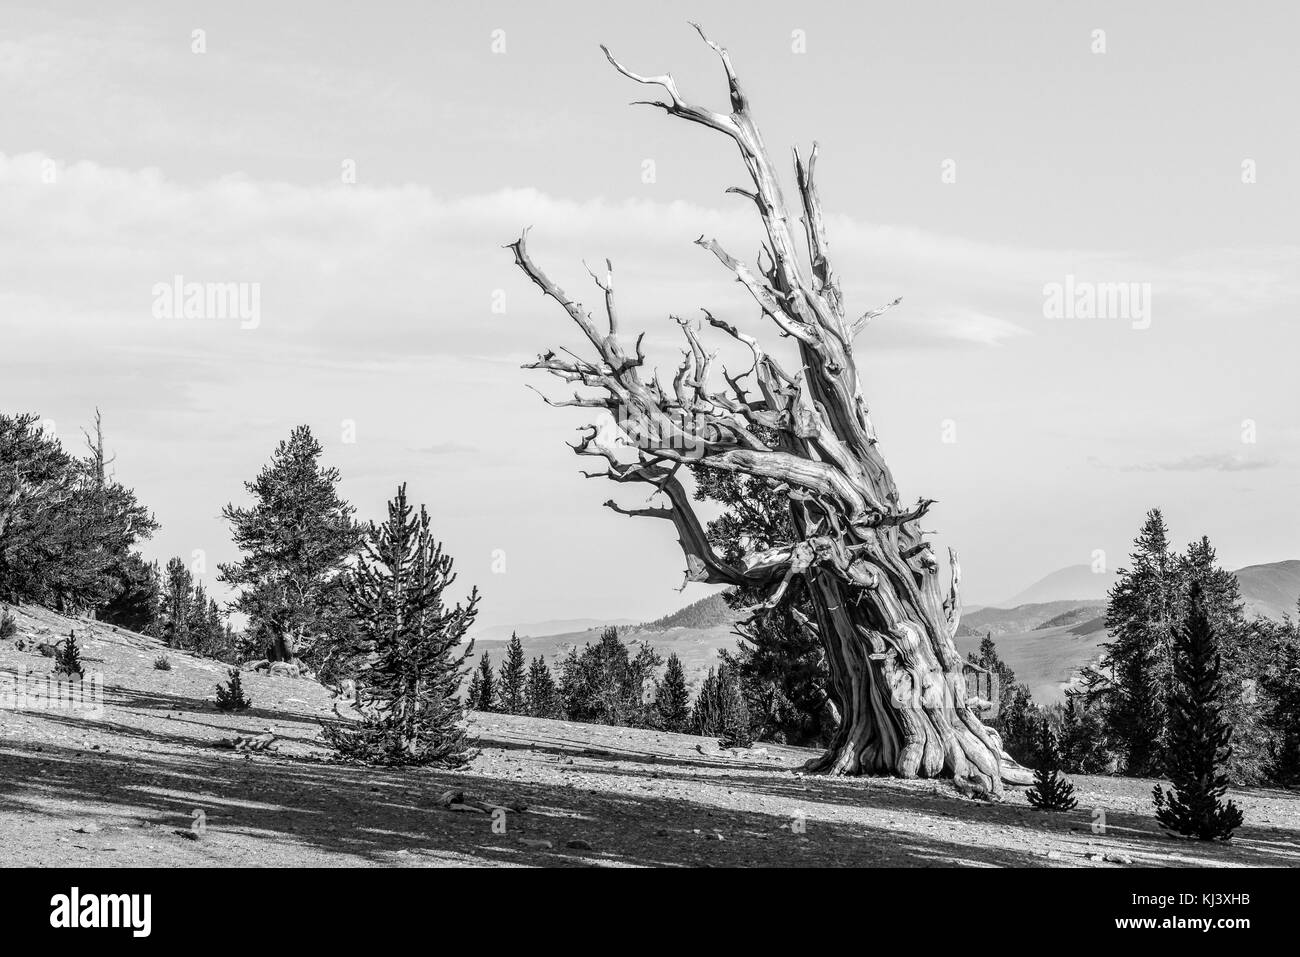 Bristlecone antica pineta - una area protetta di alta nelle White Mountains nella contea di inyo in California orientale. Foto Stock